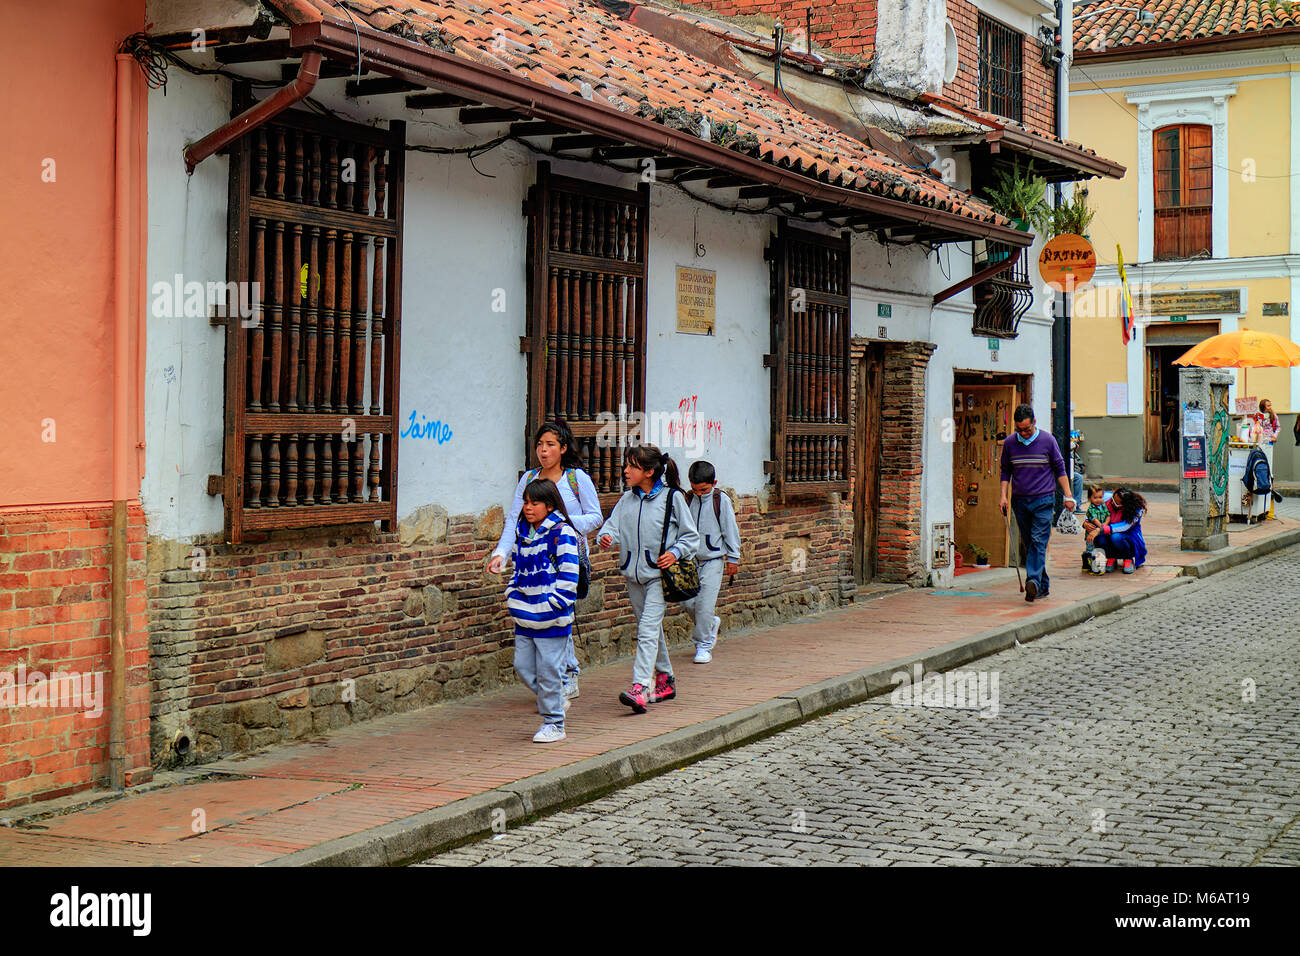 Bogotà, Colombia - 27 Gennaio 2017: locale al popolo colombiano a piedi attraverso le stradine del centro storico La Candelaria nel quartiere della capitale Foto Stock